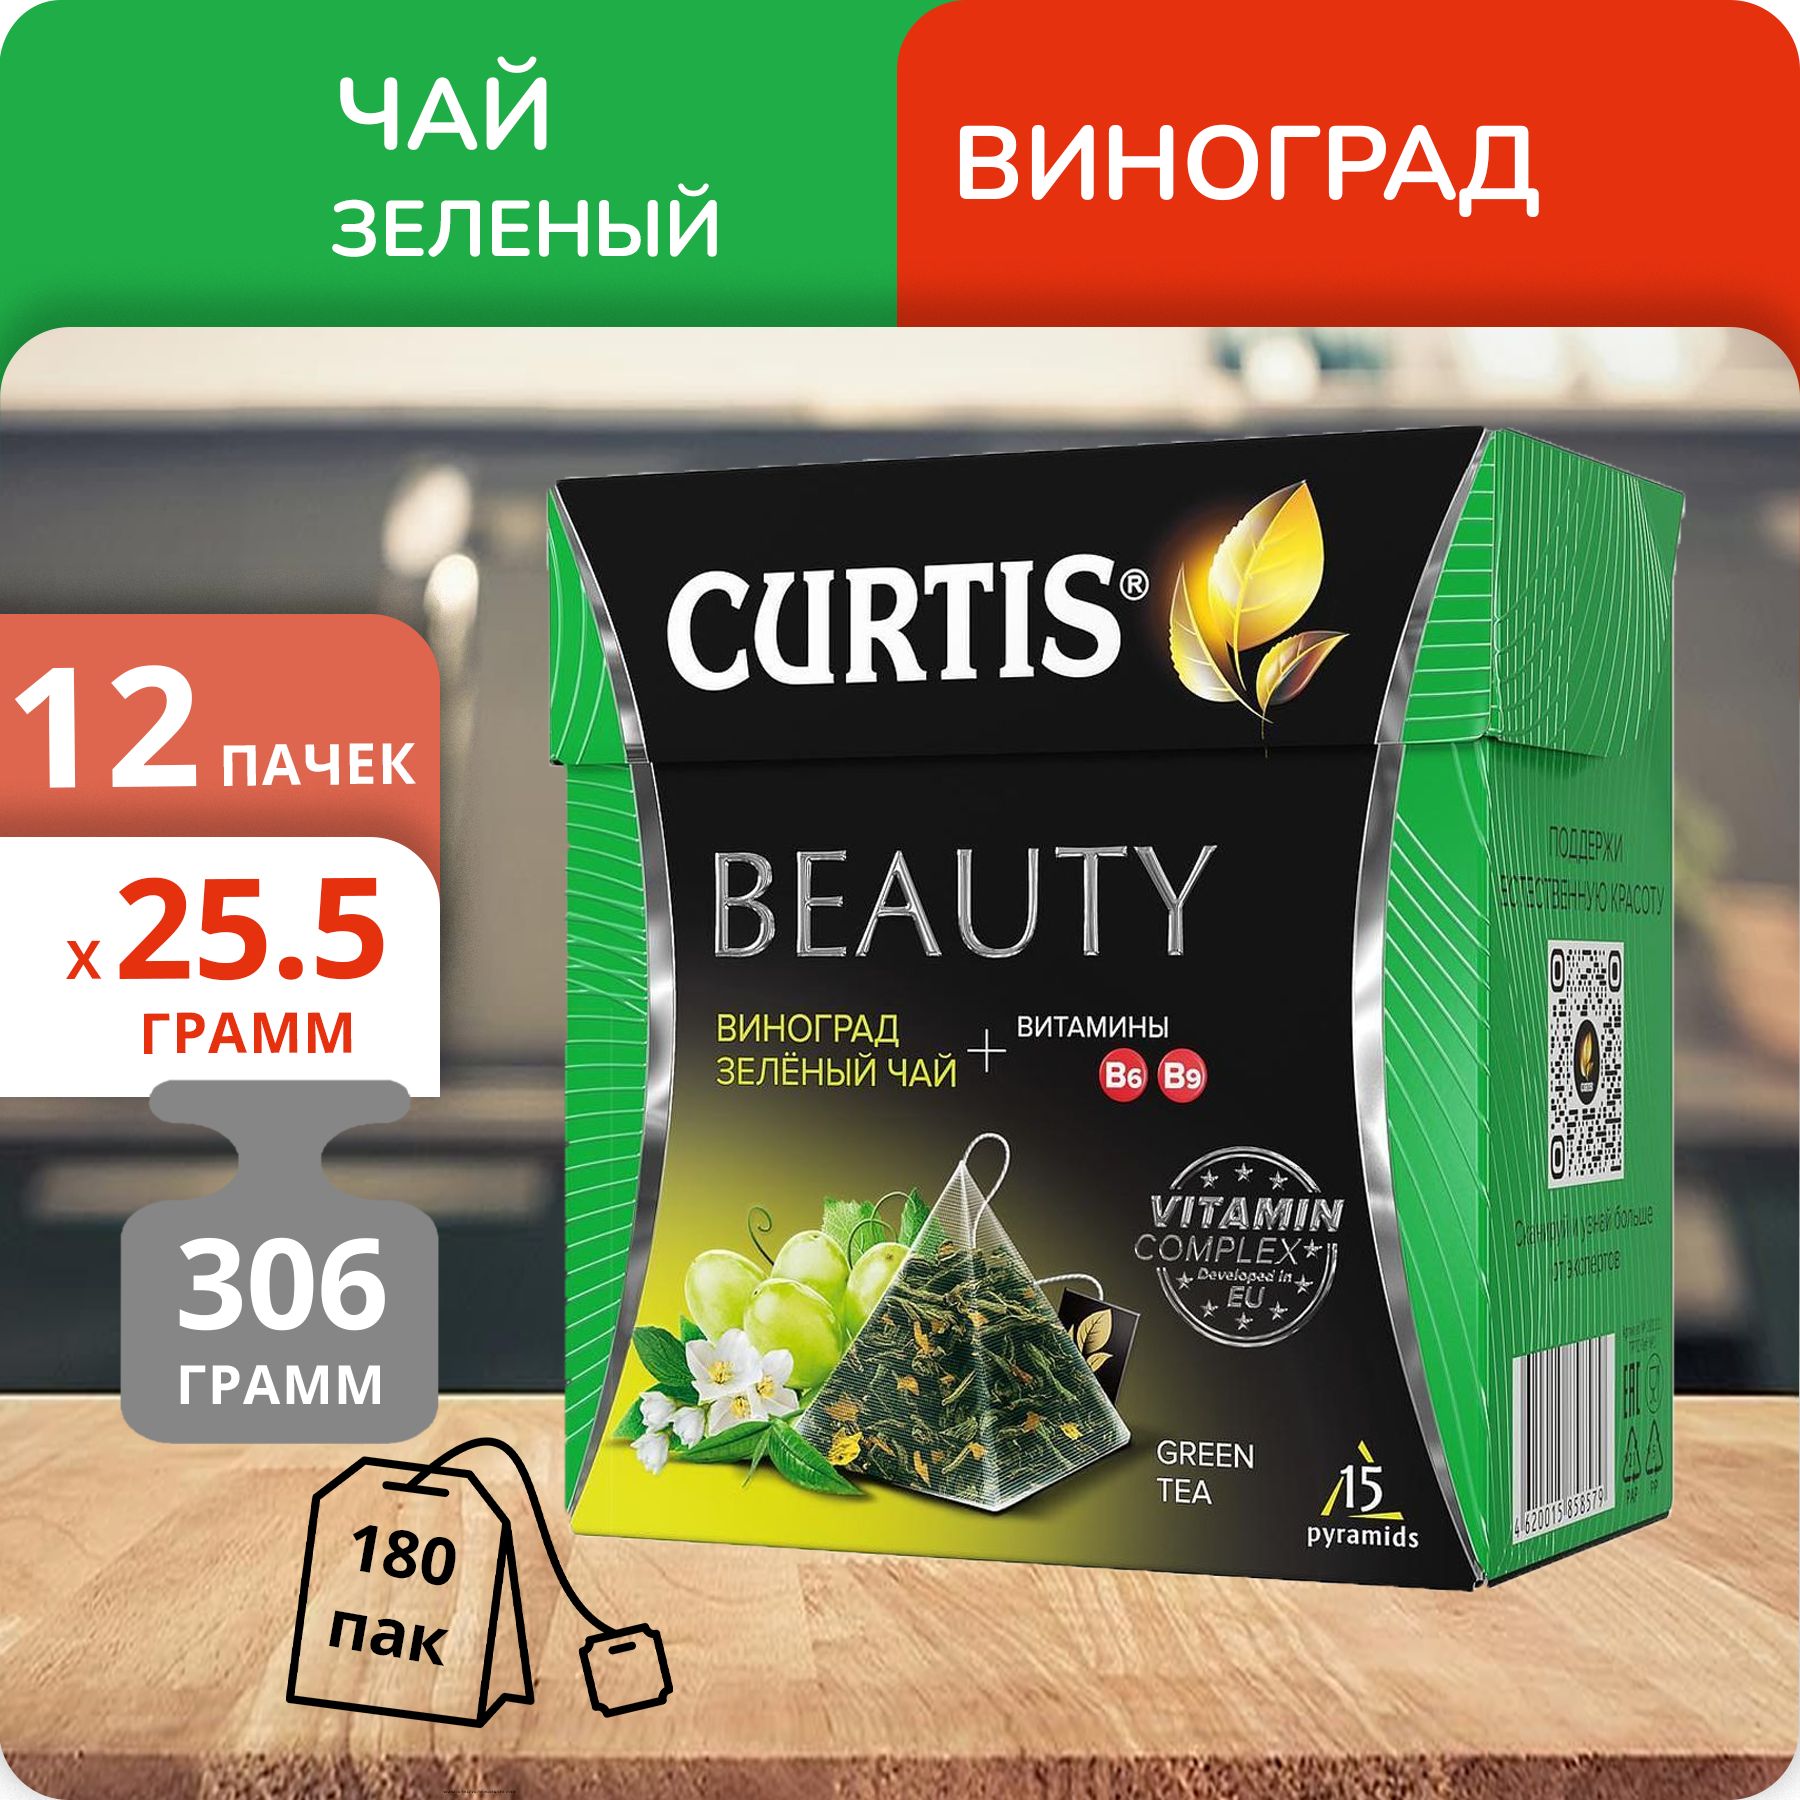 Чай Curtis Beauty 1,7г х 15, 12 шт